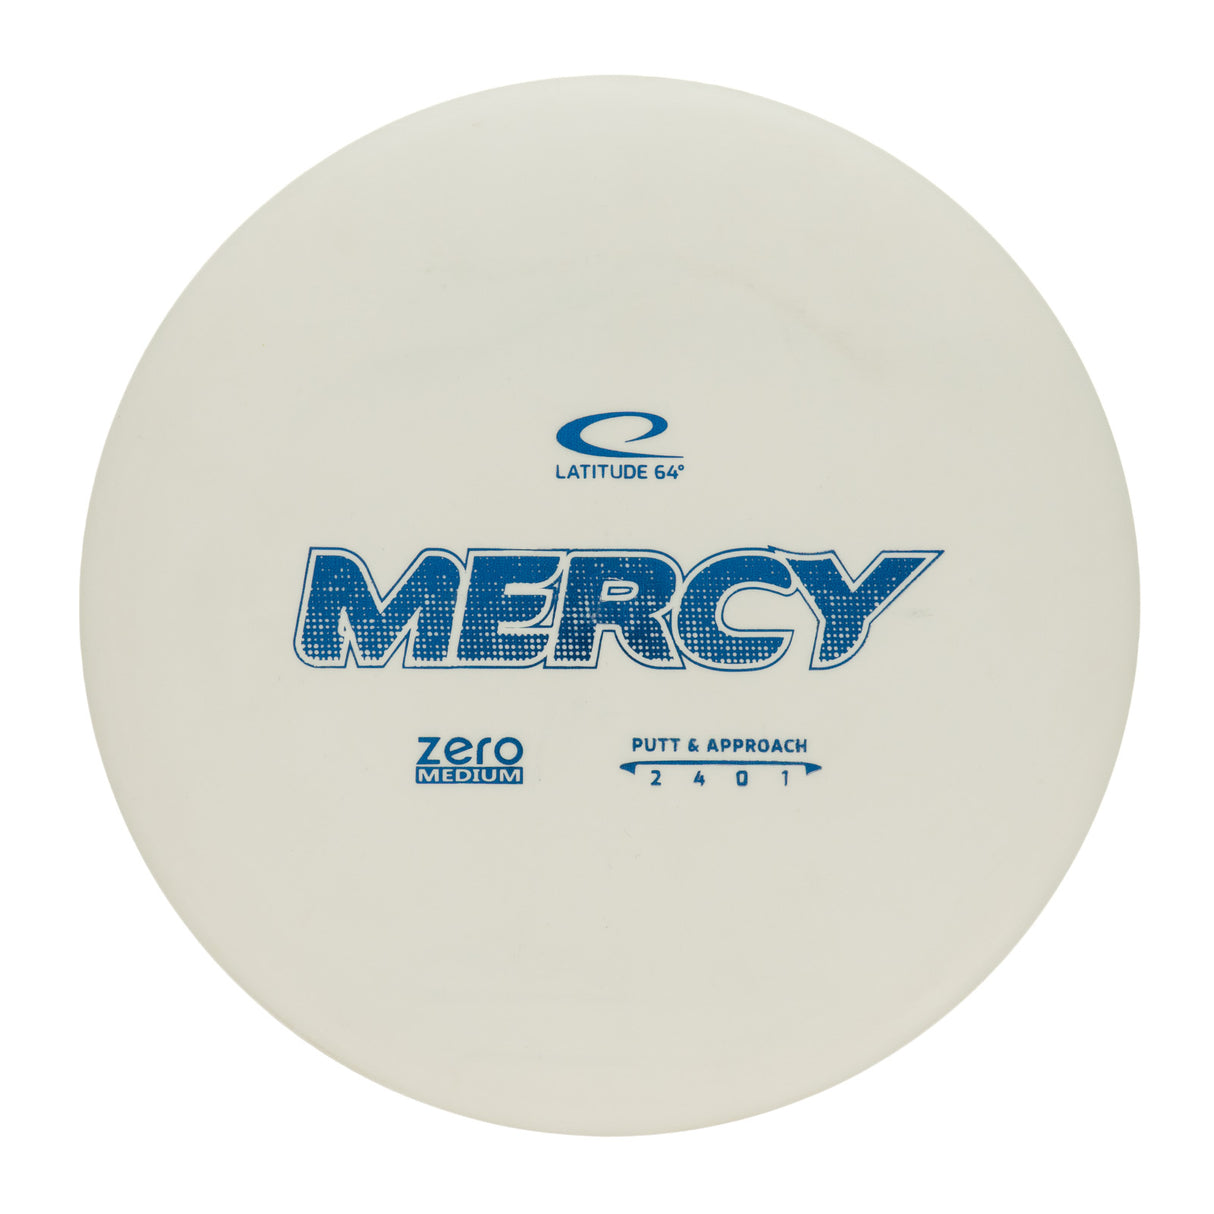 Latitude 64 Mercy - Zero Medium 174g | Style 0003